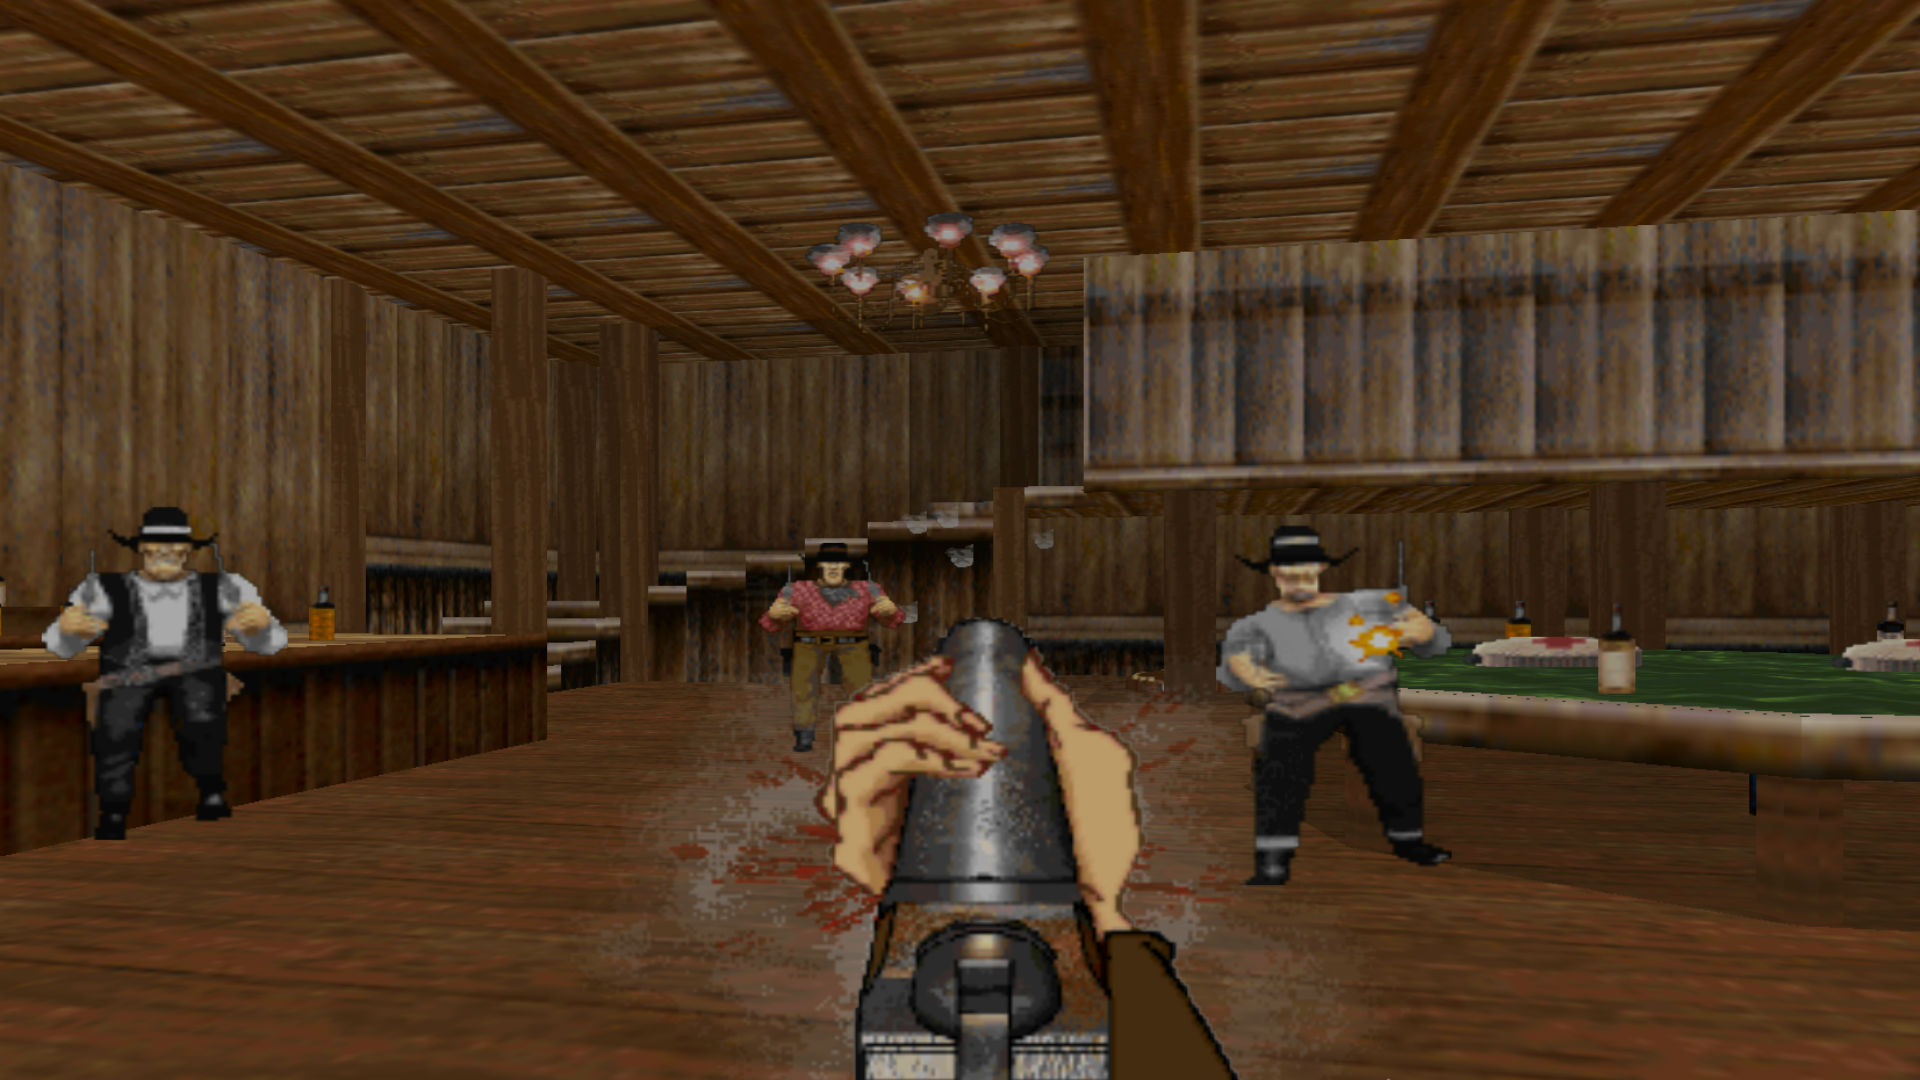 Ein Shootout in einer Bar in Outlaws, eines der besten alten Spiele